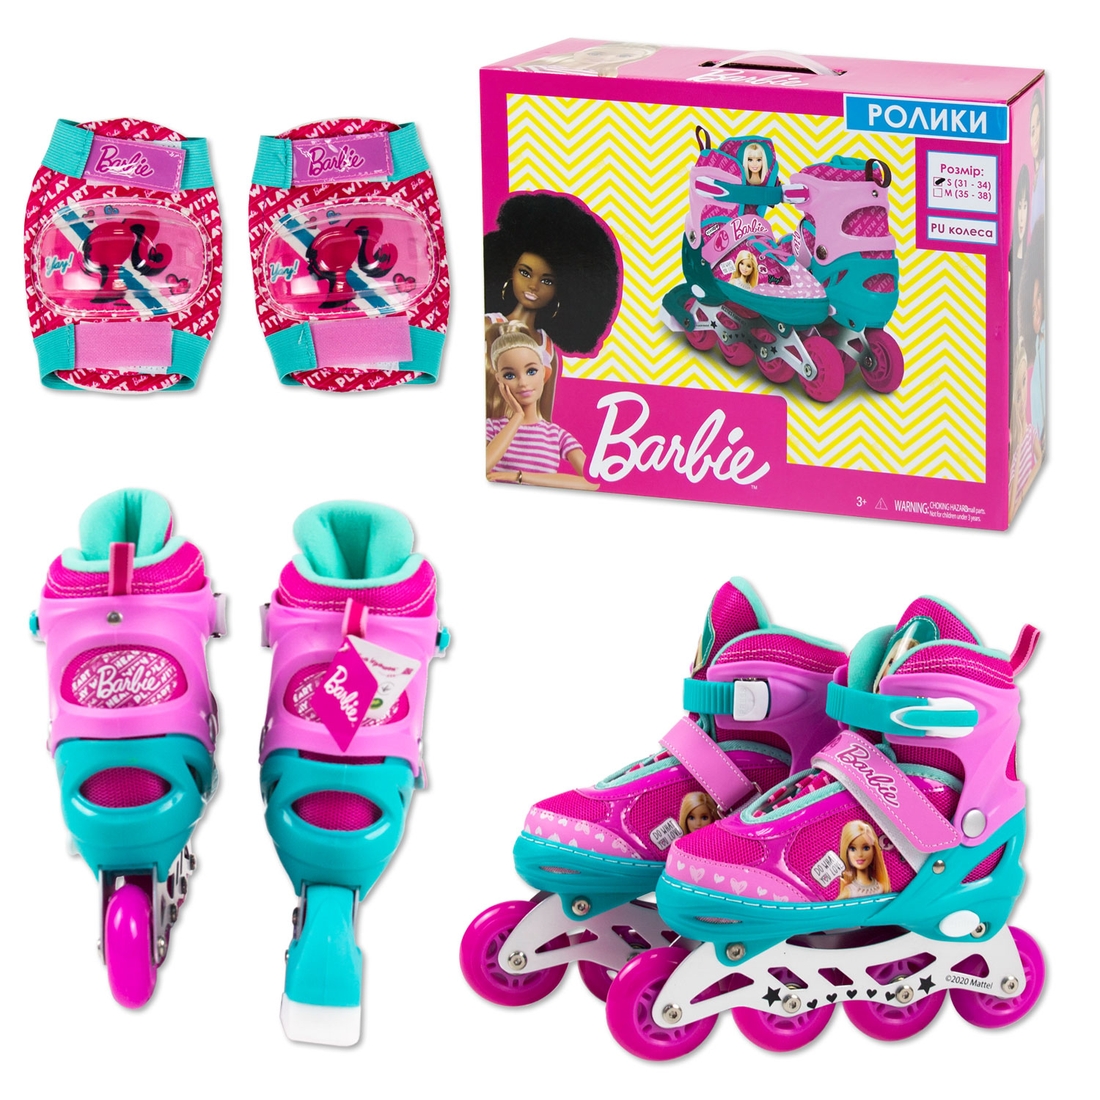 Фото Ролики RL2113 Barbie, размер S (31-34), pu 1 свет с защитой в коробке (6906883809300)